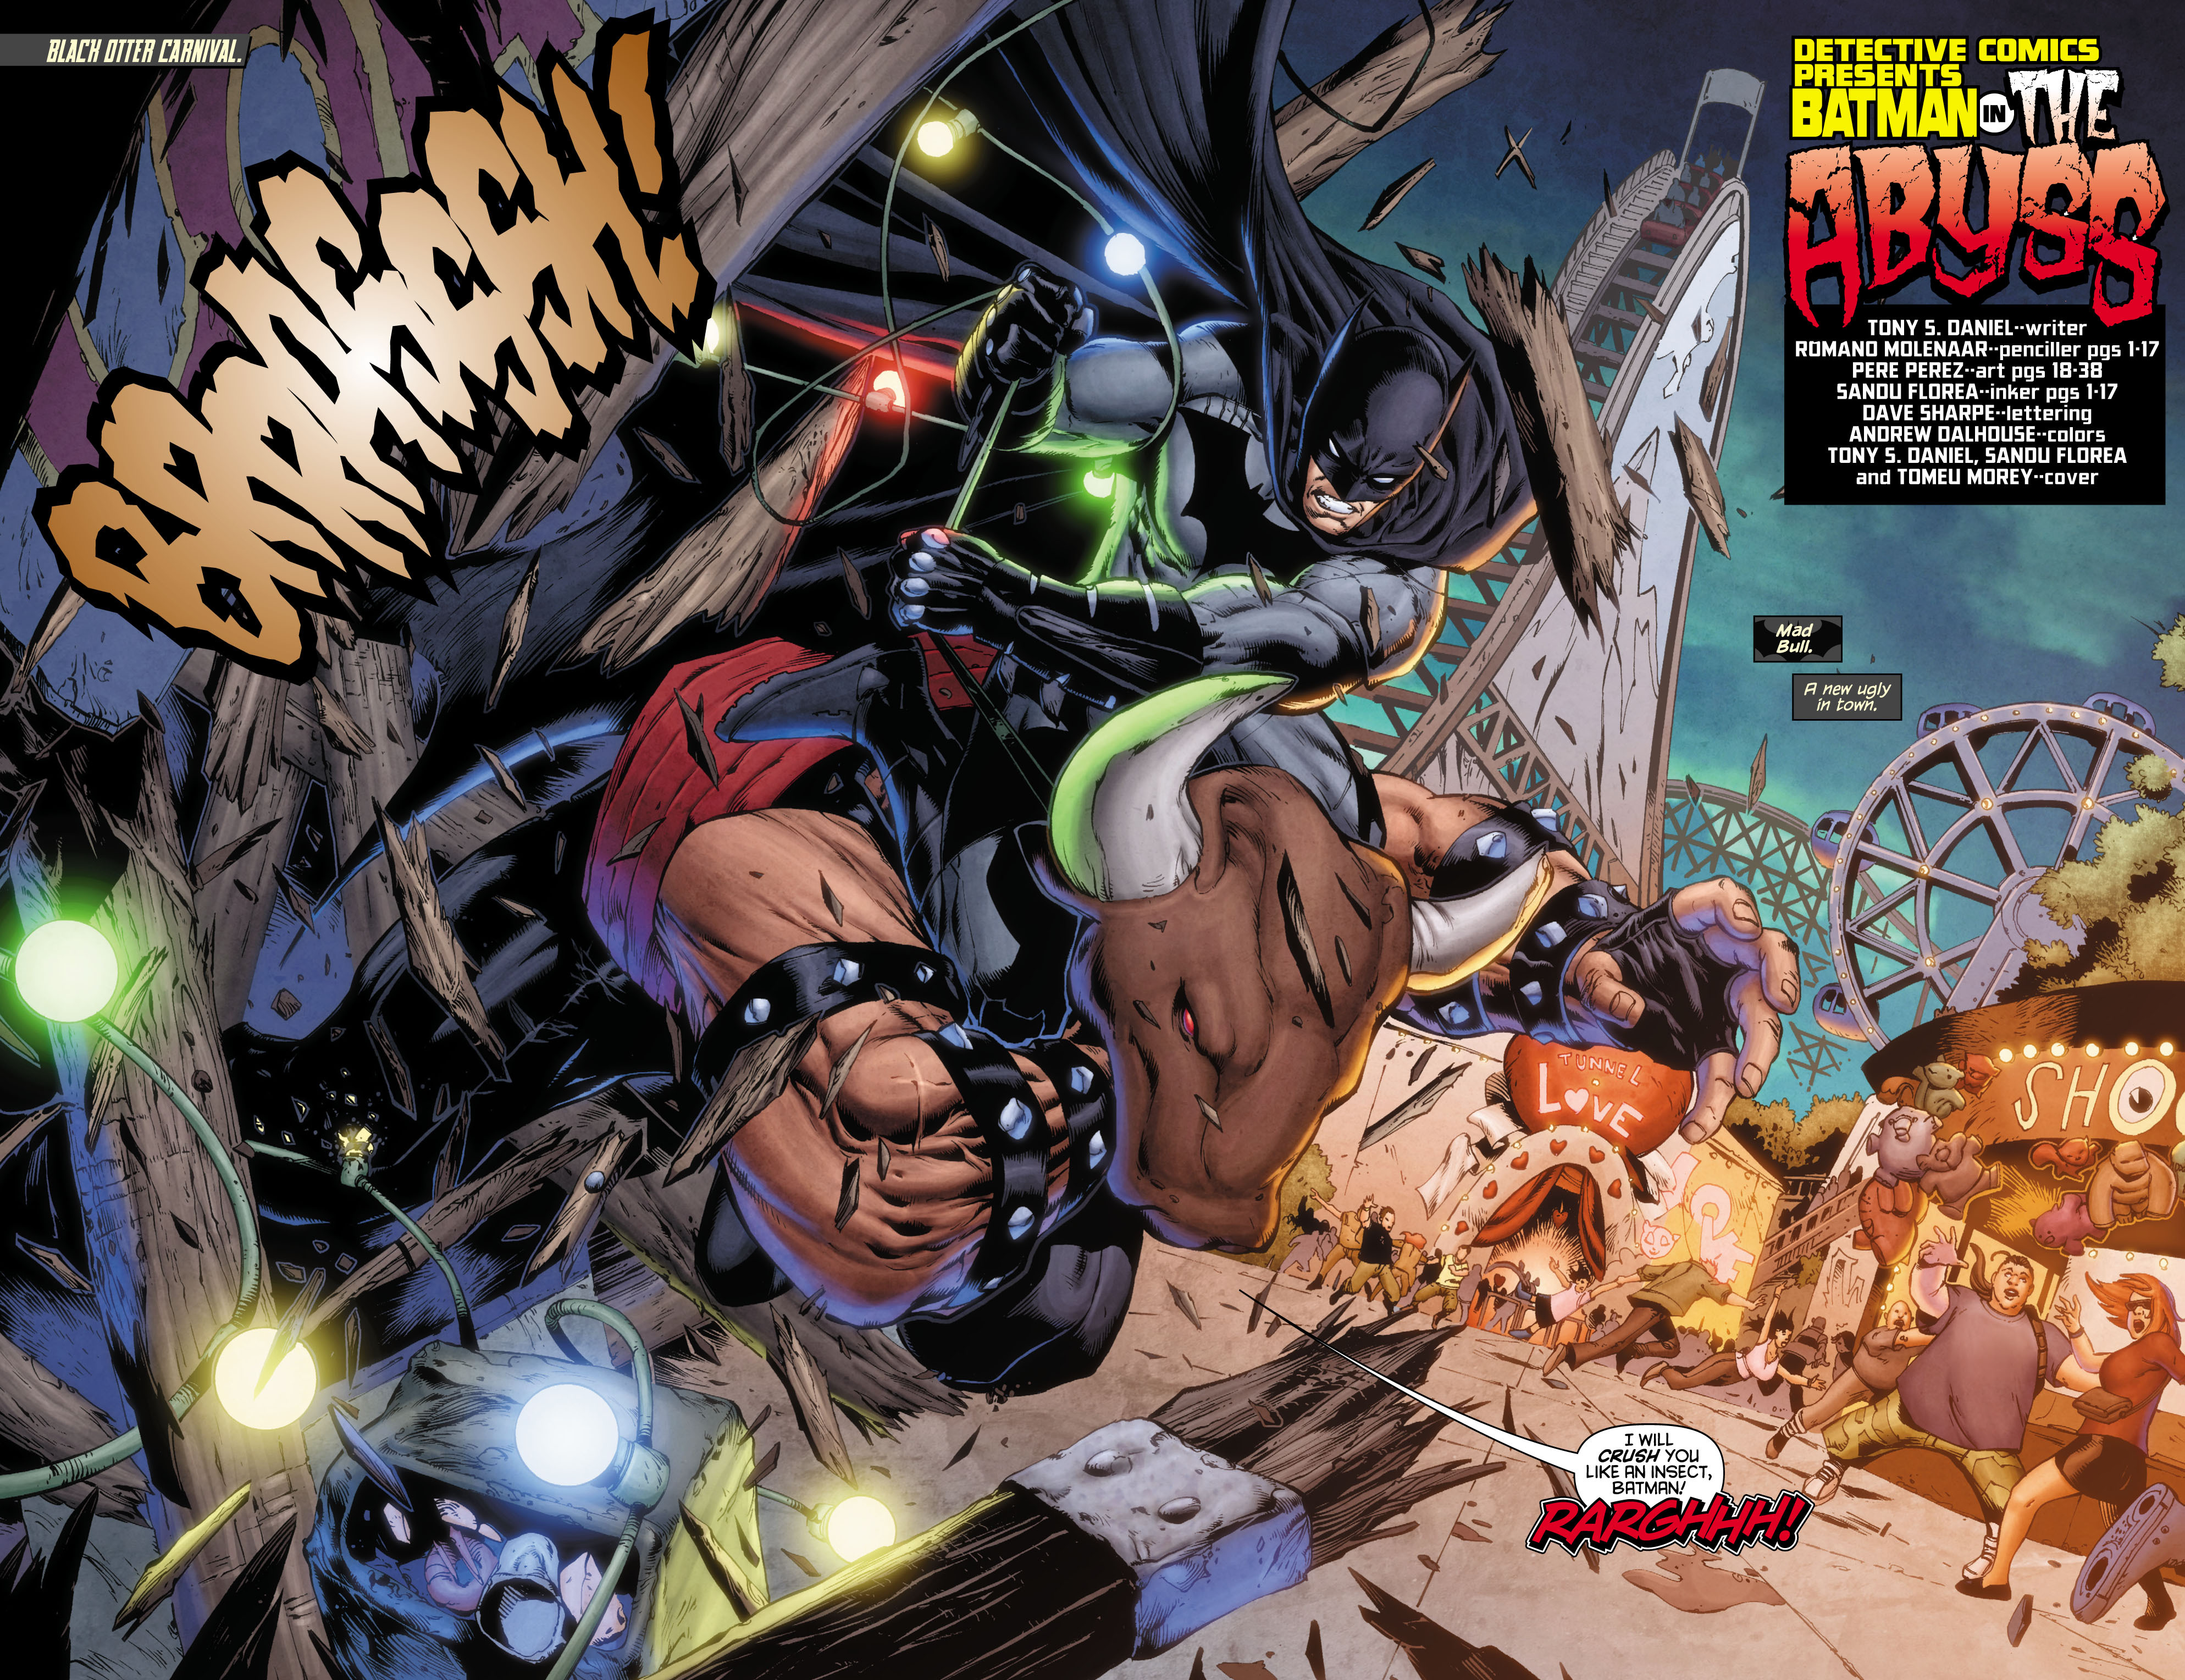 Read online Batman: Detective Comics comic -  Issue # TPB 2 - 112